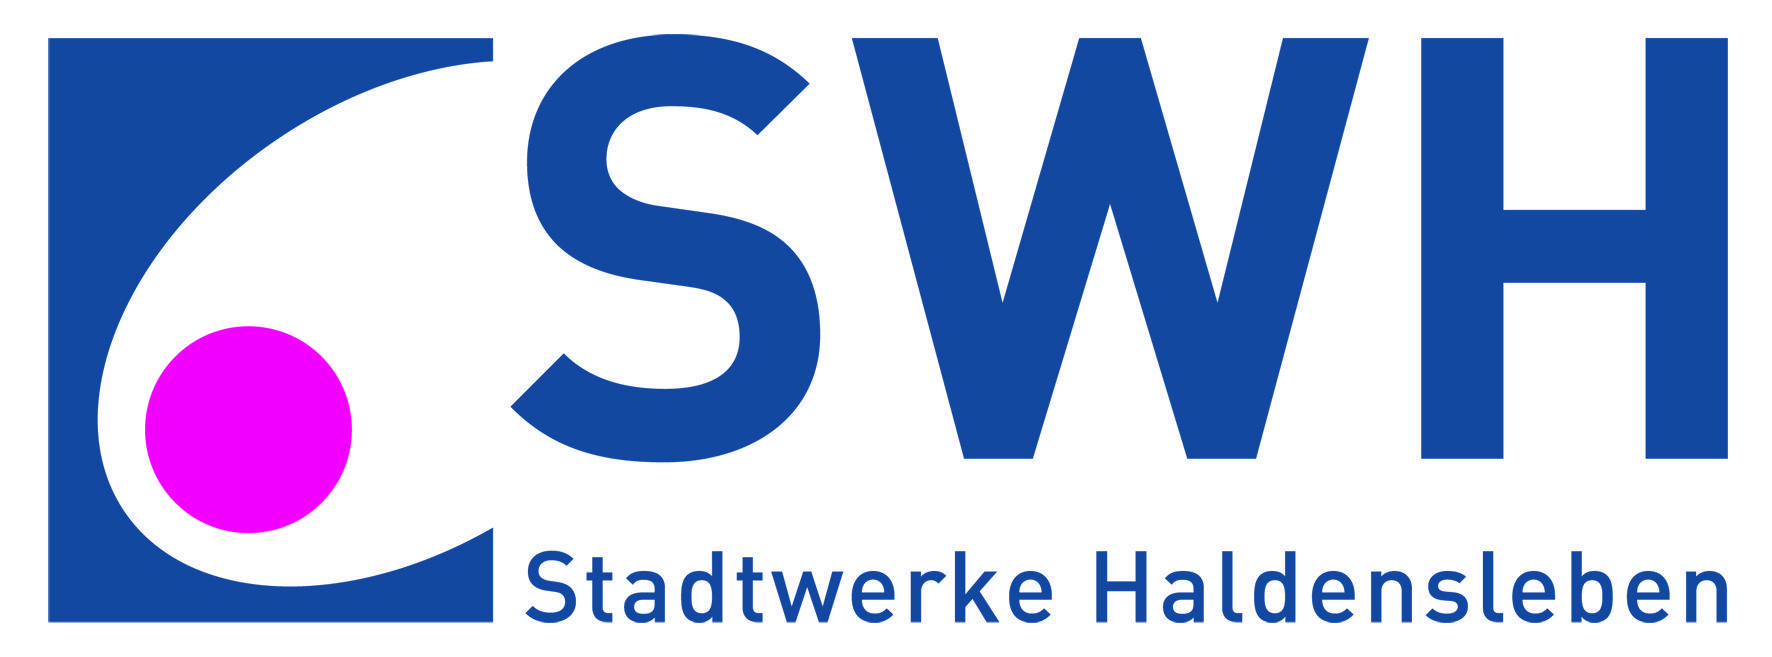 Stadtwerke Haldensleben GmbH